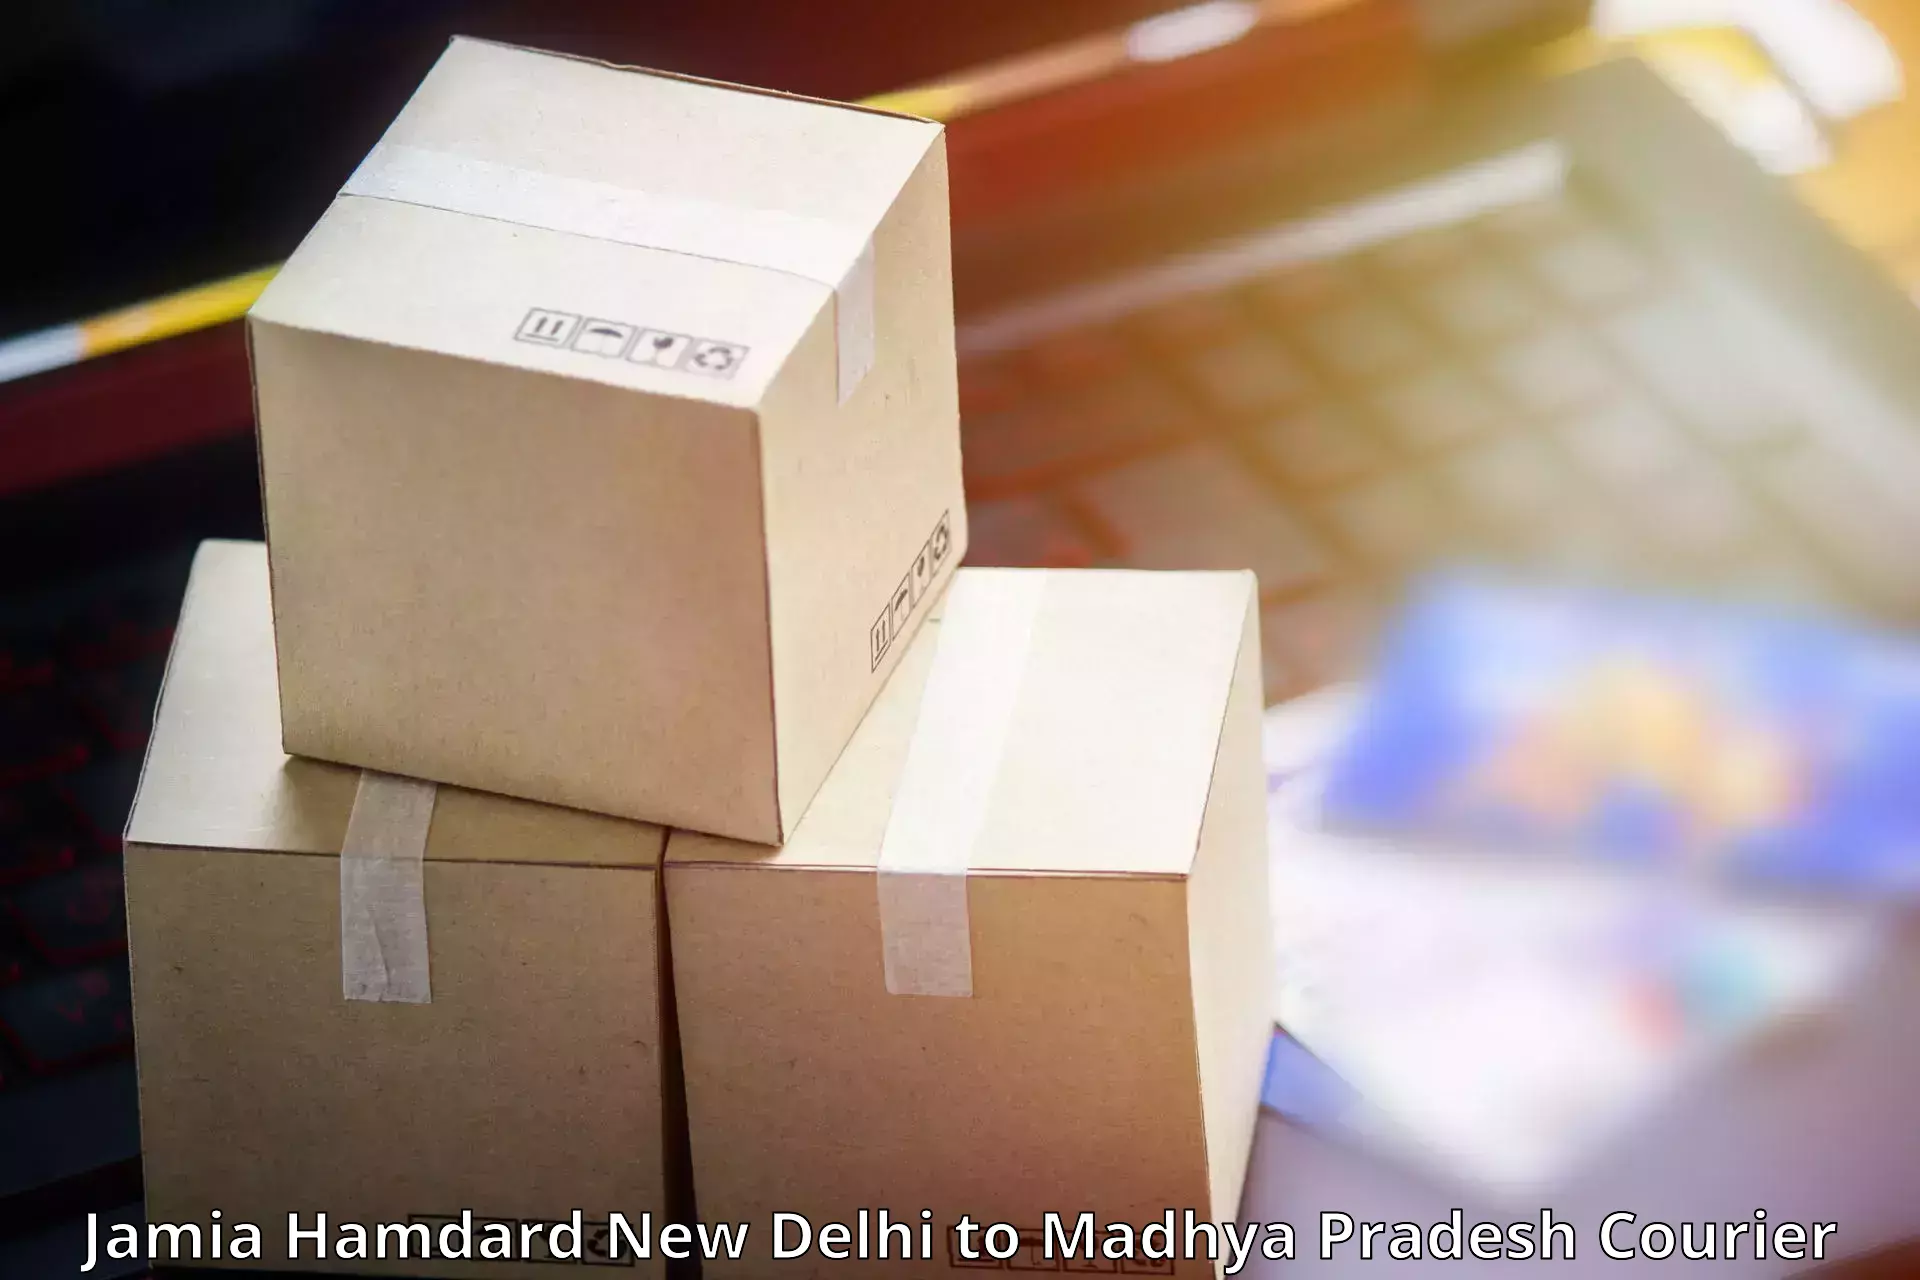 Courier service booking Jamia Hamdard New Delhi to Bareli